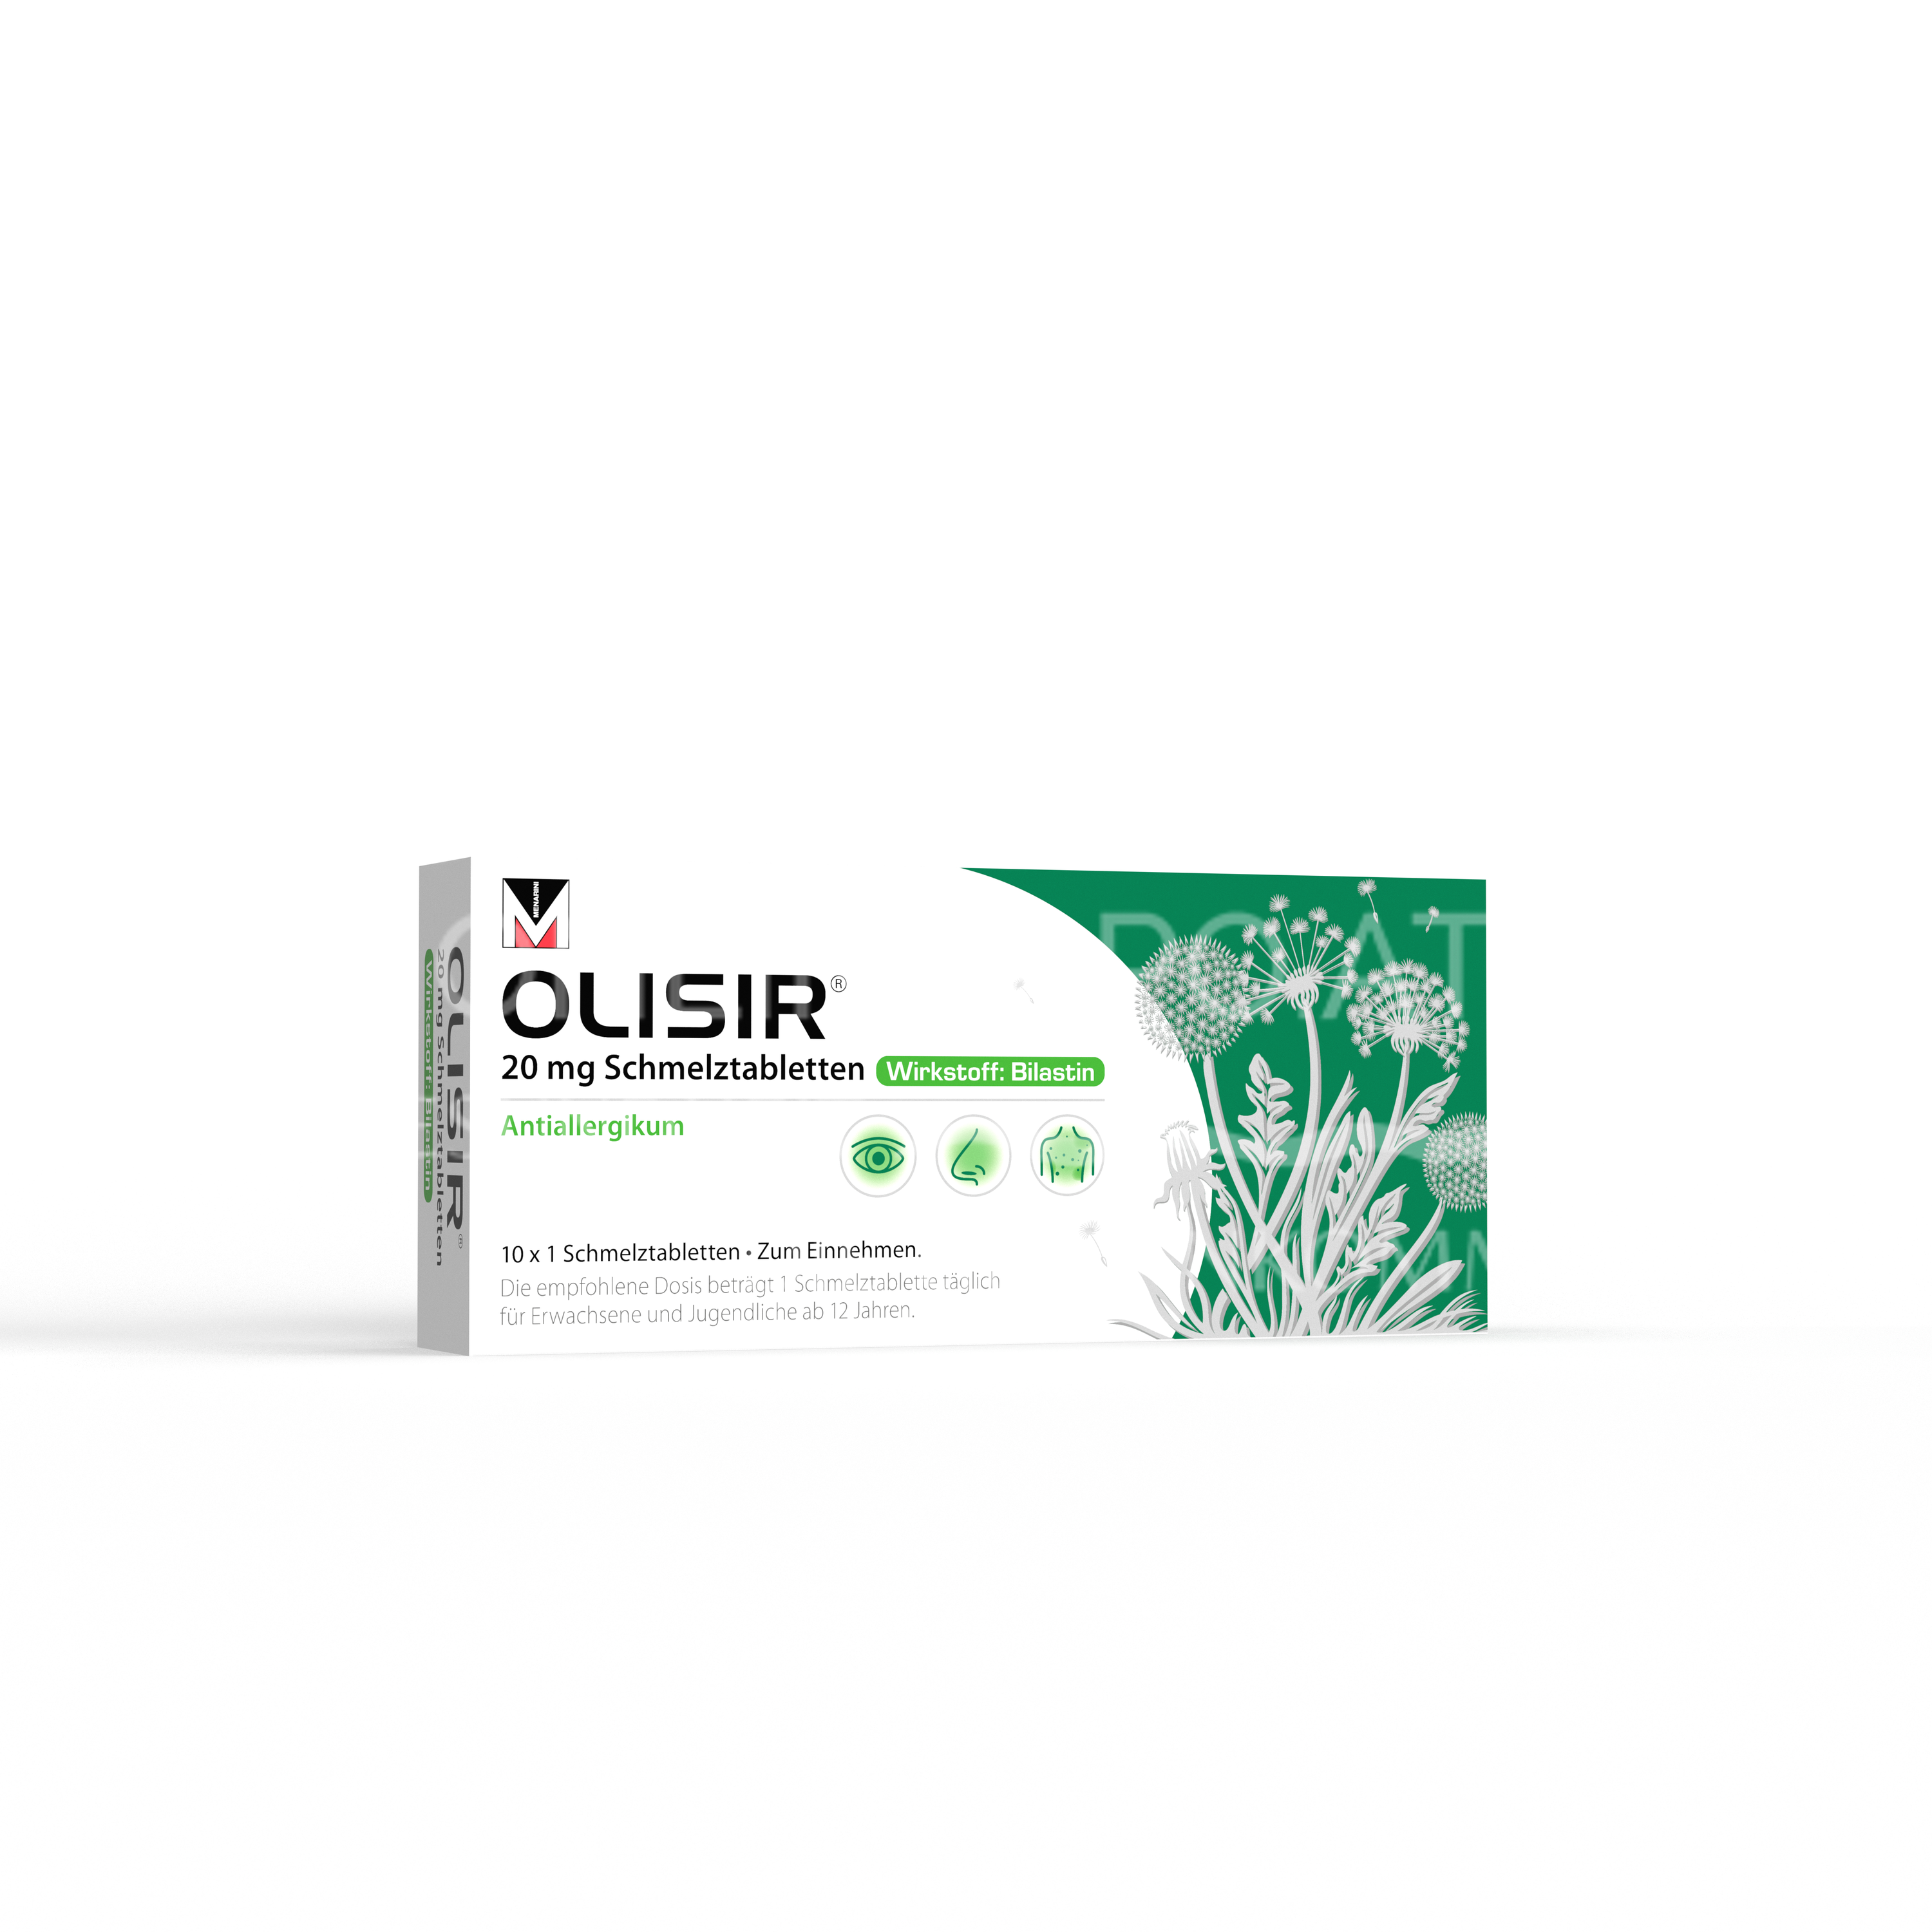 Olisir® 20 mg Schmelztabletten